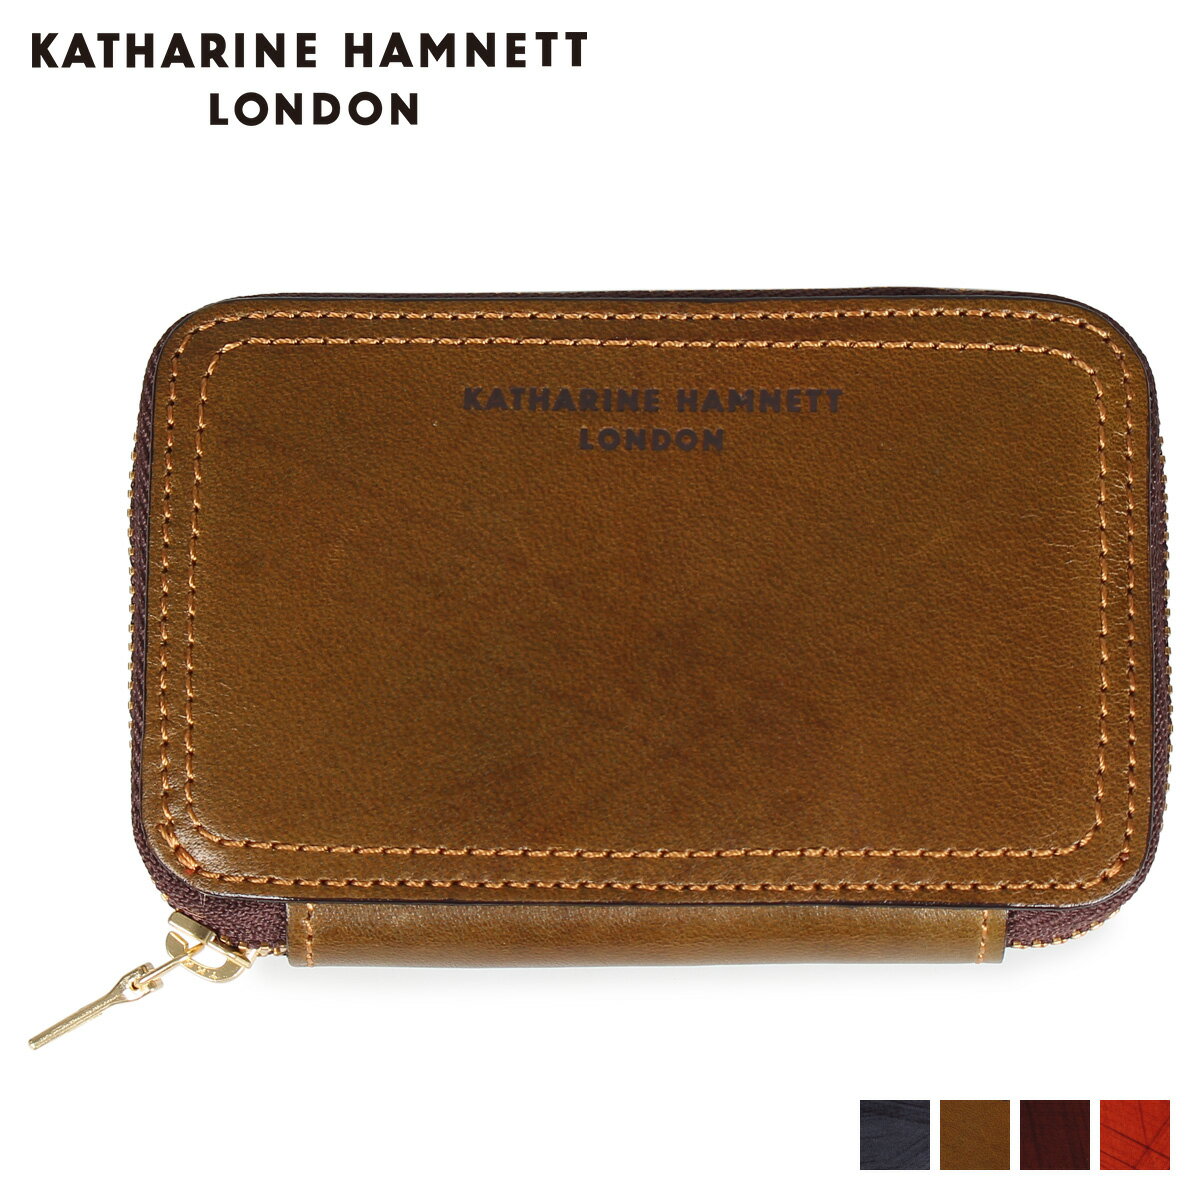 キャサリンハムネット ロンドン KATHARINE HAMNETT LONDON 財布 ミニ財布 メンズ ラウンドファスナー MINI WALLET ネイビー オリーブ ブラウン ダークブラウン KH-1207015